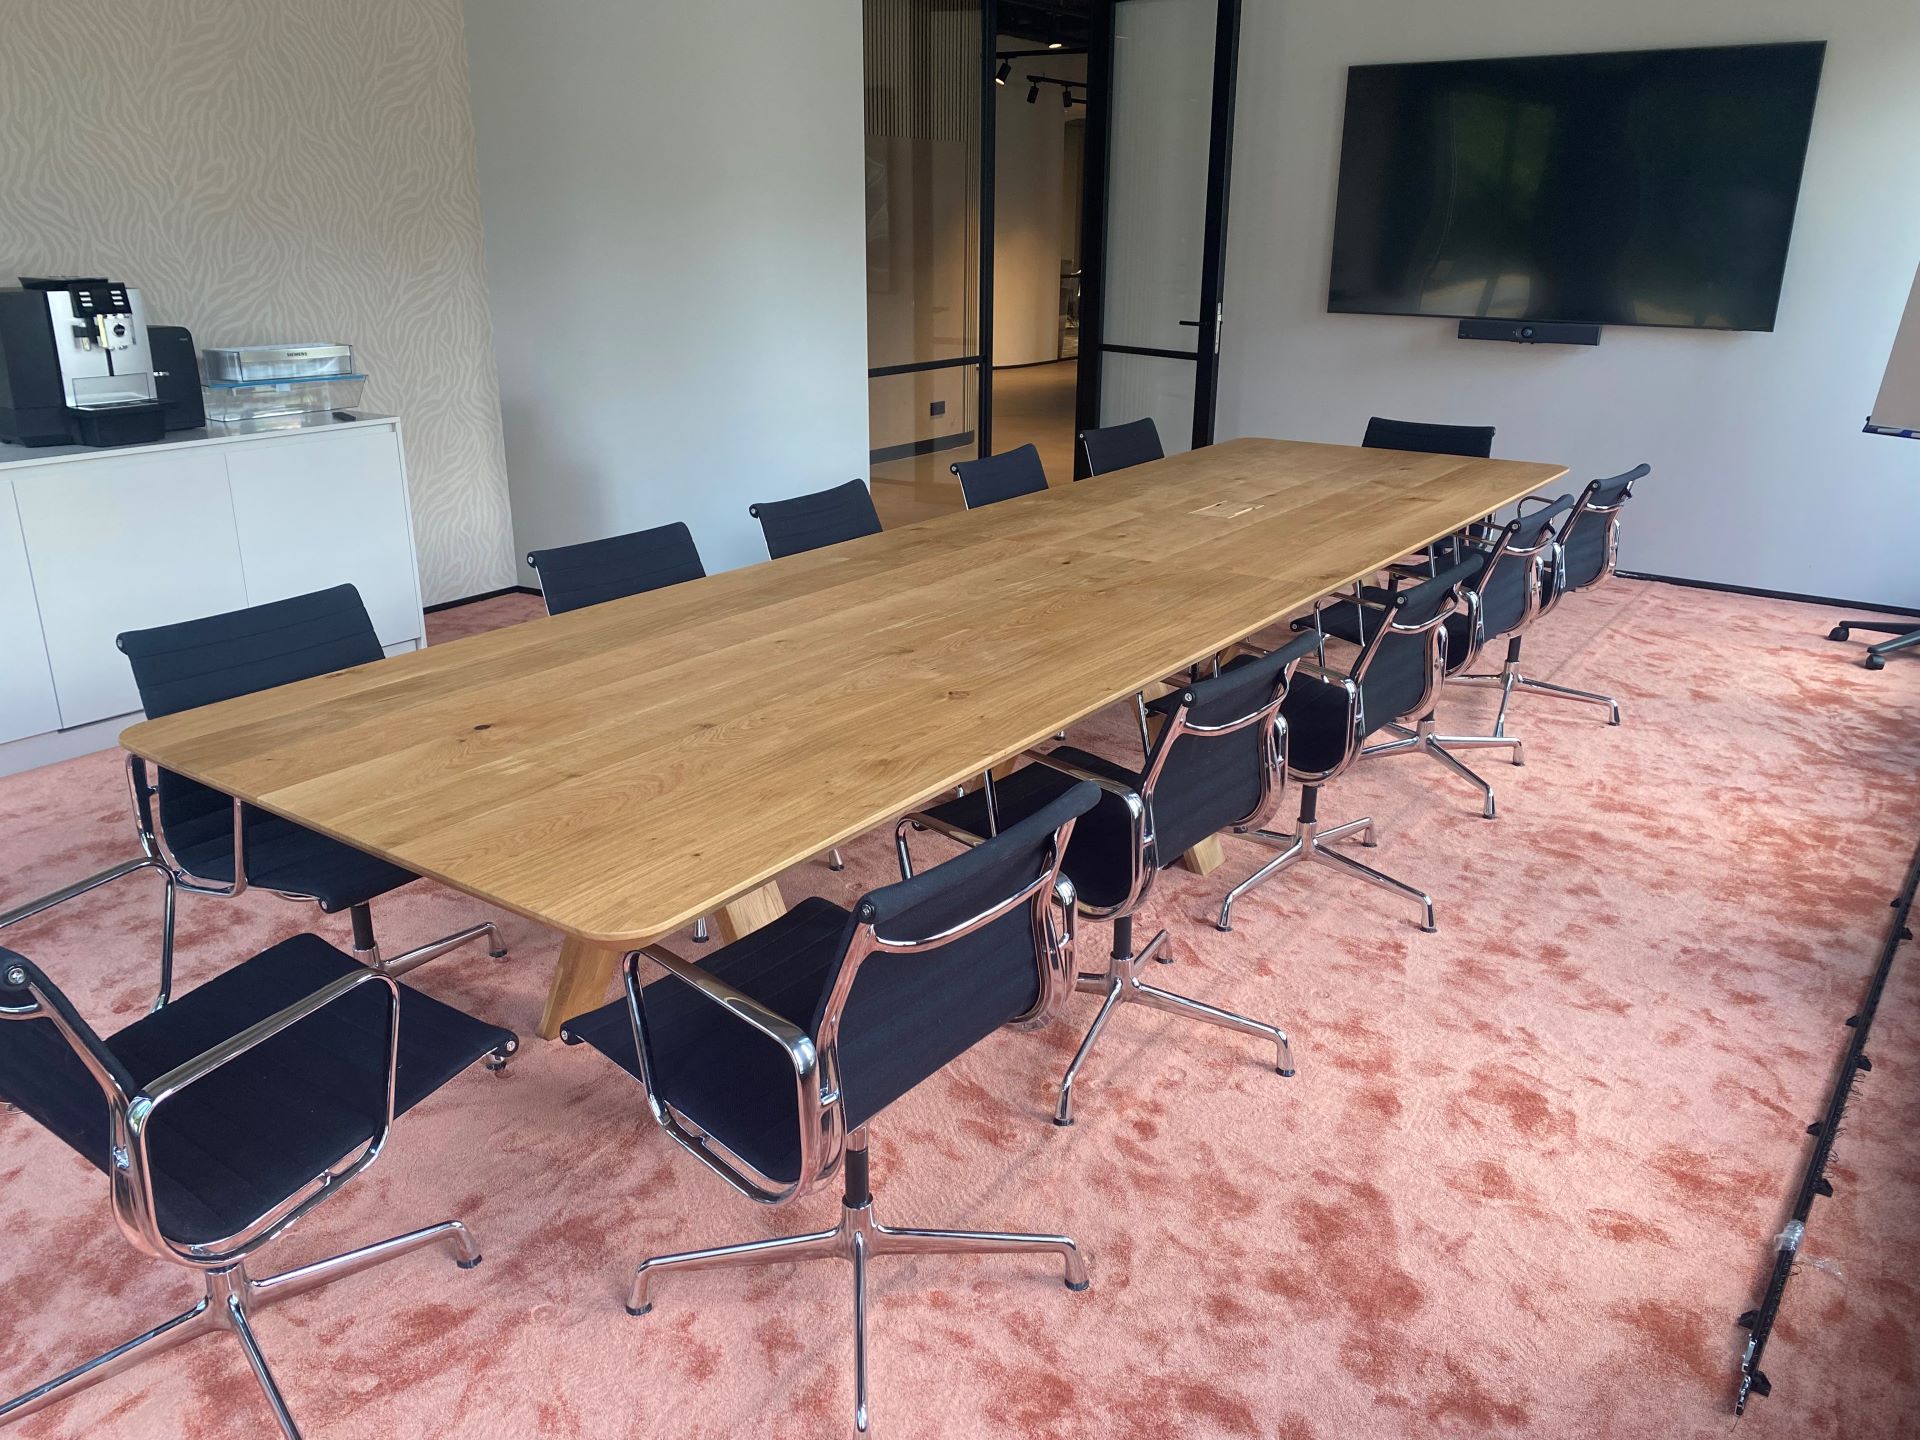 Meeting ruimte met grote rechthoekige tafel